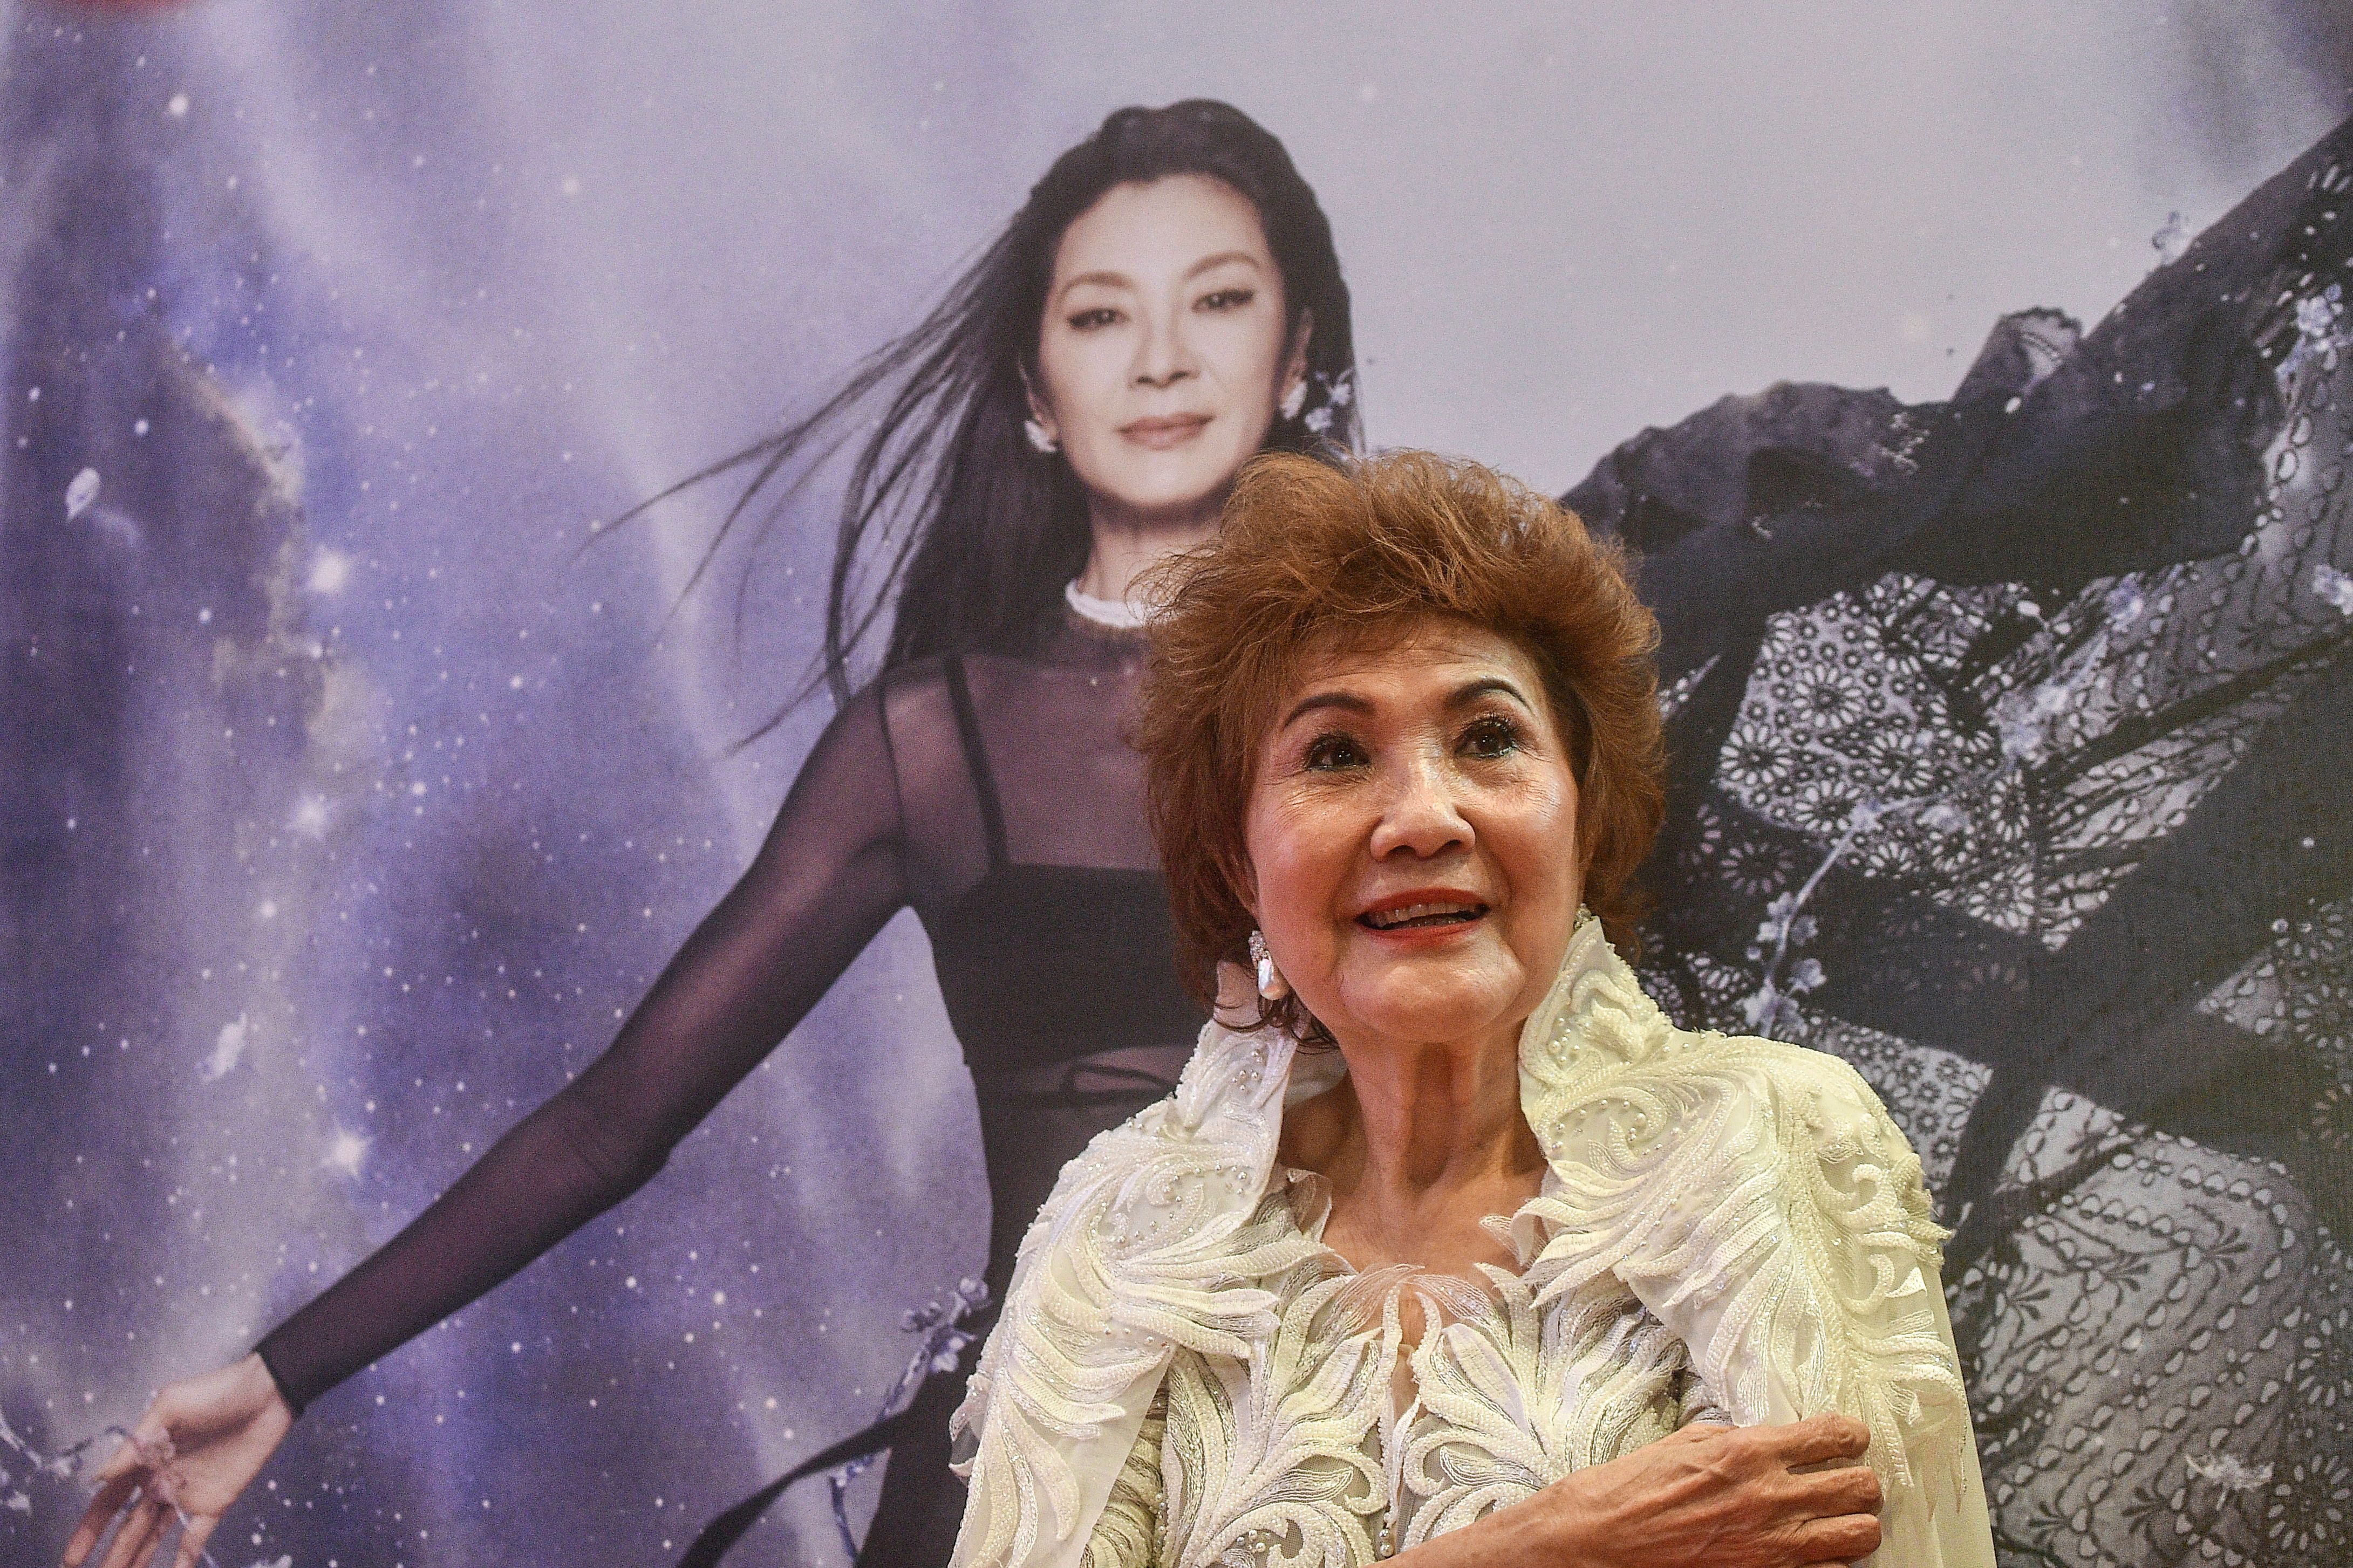 Janet Yeoh, mère de l'actrice Michelle Yeoh, pose pour des photos après que sa fille a remporté le prix de la meilleure actrice dans un rôle principal lors de la 95e cérémonie des Oscars à Los Angeles, lors d'un événement à Kuala Lumpur le 13 mars 2023. | Source : Getty Images